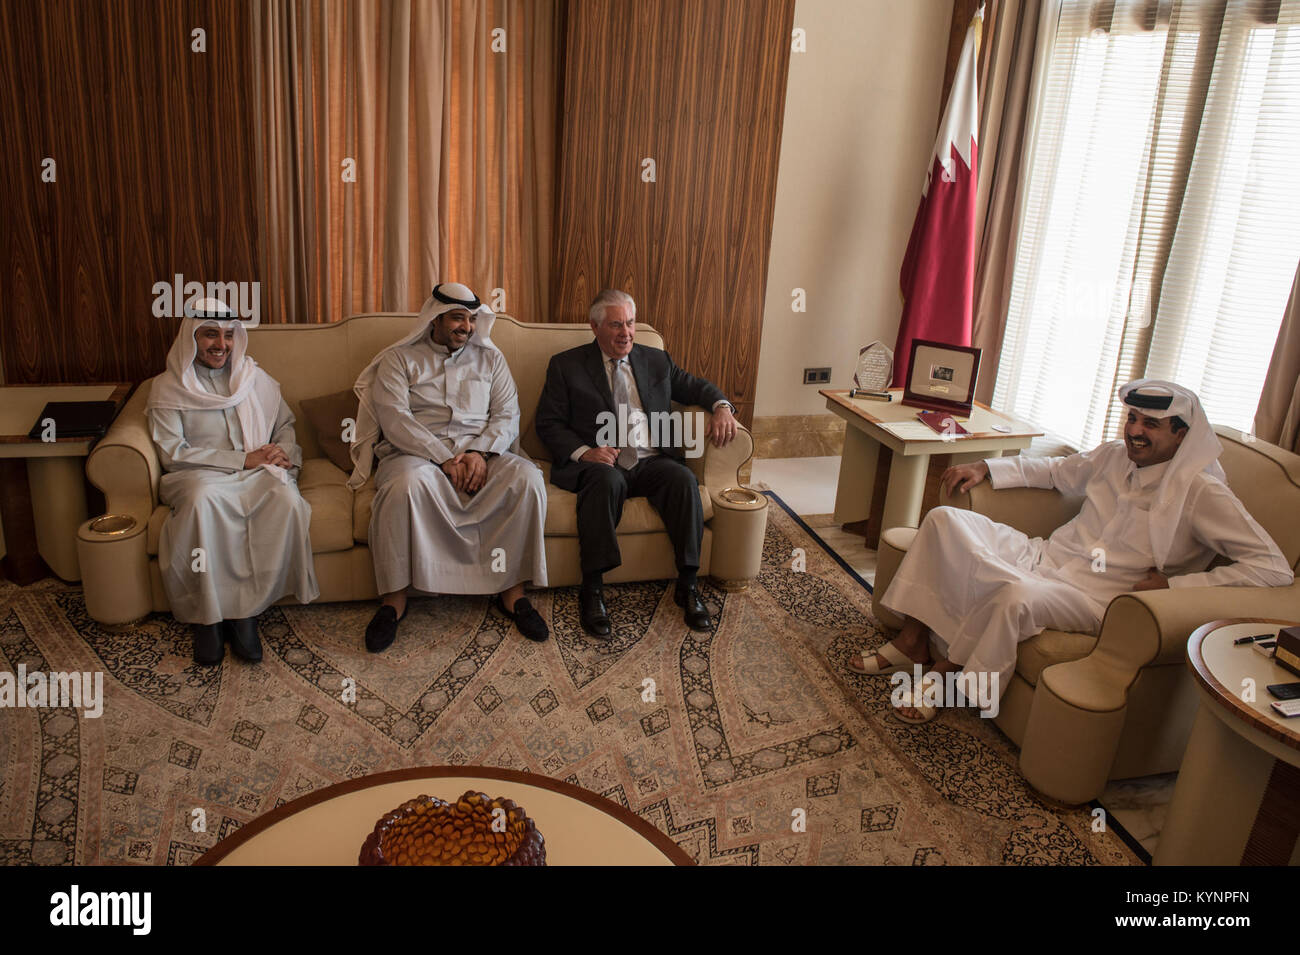 La secrétaire d'État des États-Unis, Rex Tillerson rencontre l'Emir du Qatar, Son Altesse Cheikh Tamim Bin Hamad Al Thani, à la mer à Doha, Qatar, le 11 juillet 2017. Tillerson secrétaire rencontre l'Emir du Qatar à Doha 35766012471 o Banque D'Images